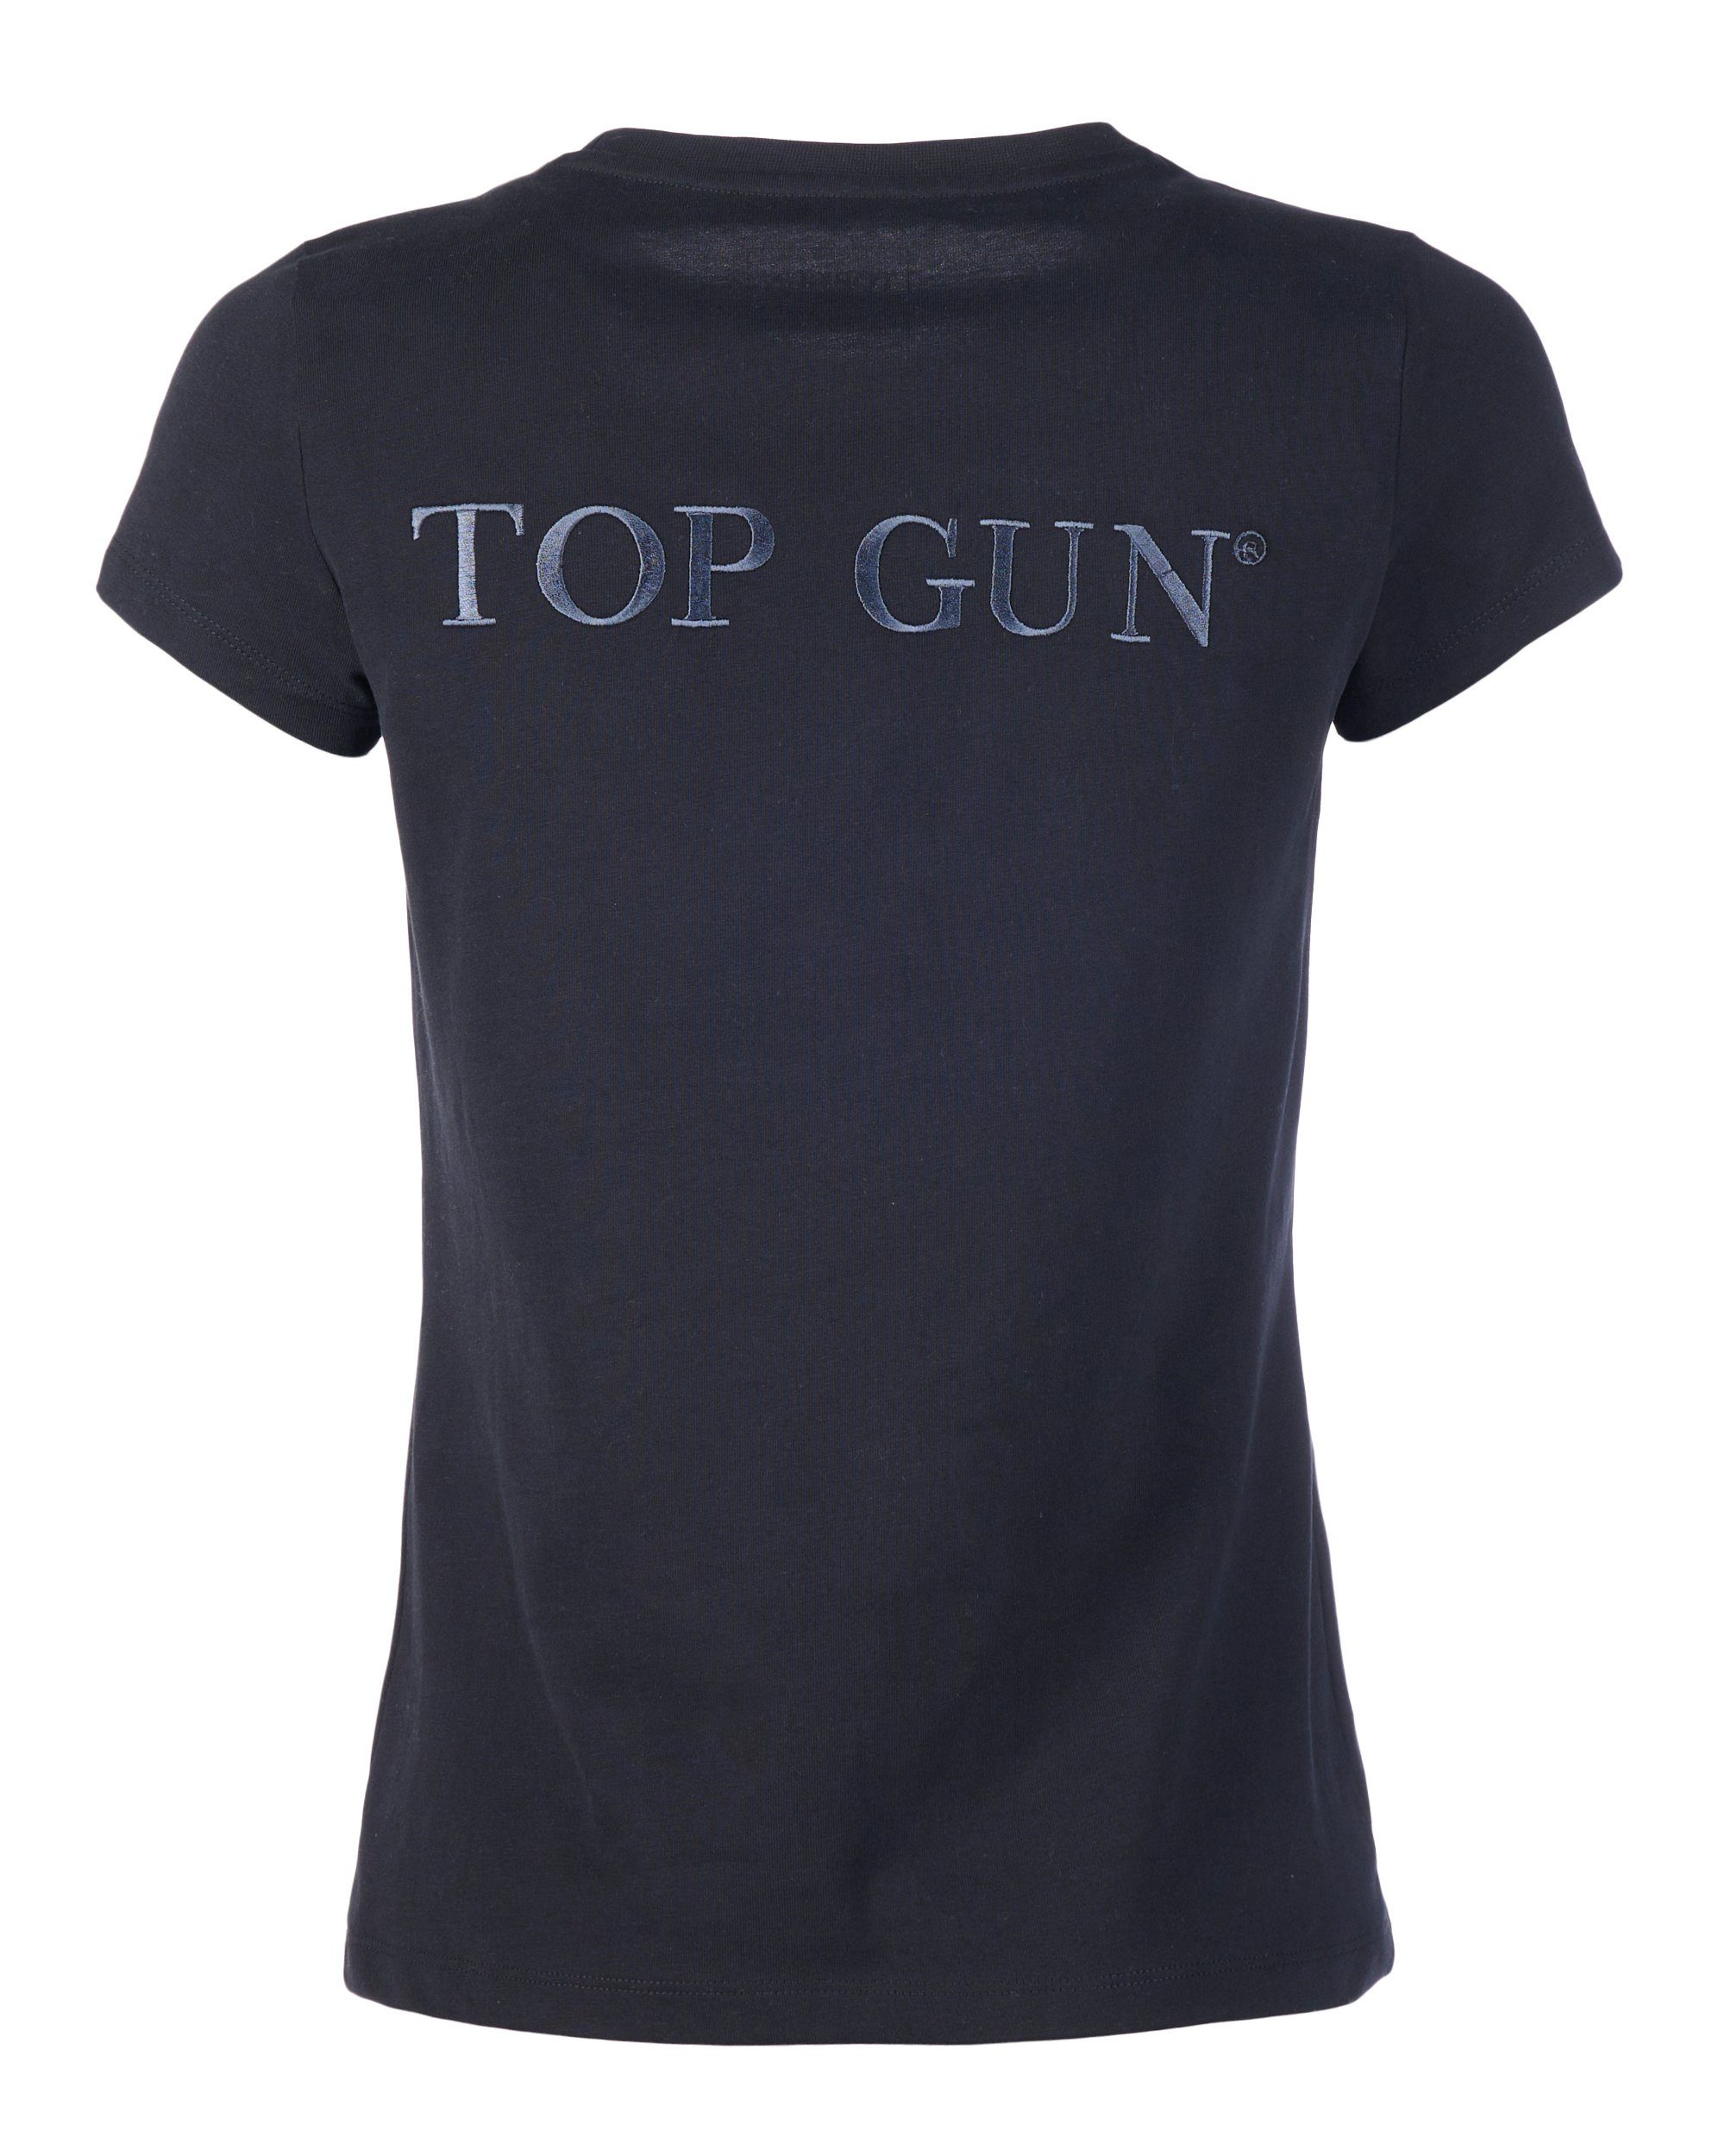 GUN TG22018 T-Shirt TOP